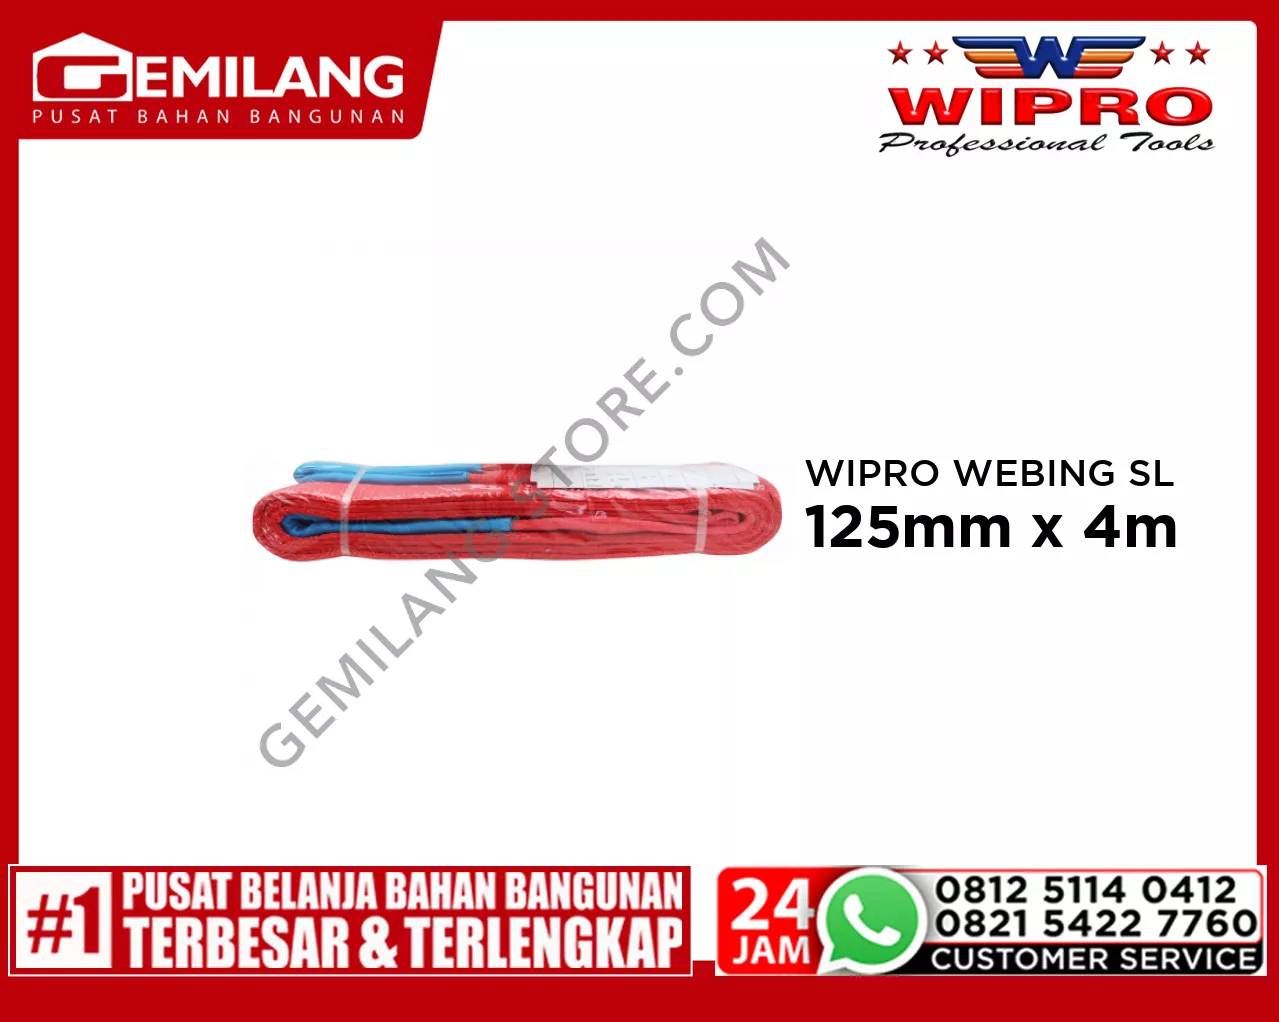 WIPRO WEBING SLING WLL 5T4 (MERAH) 125mm x 4m